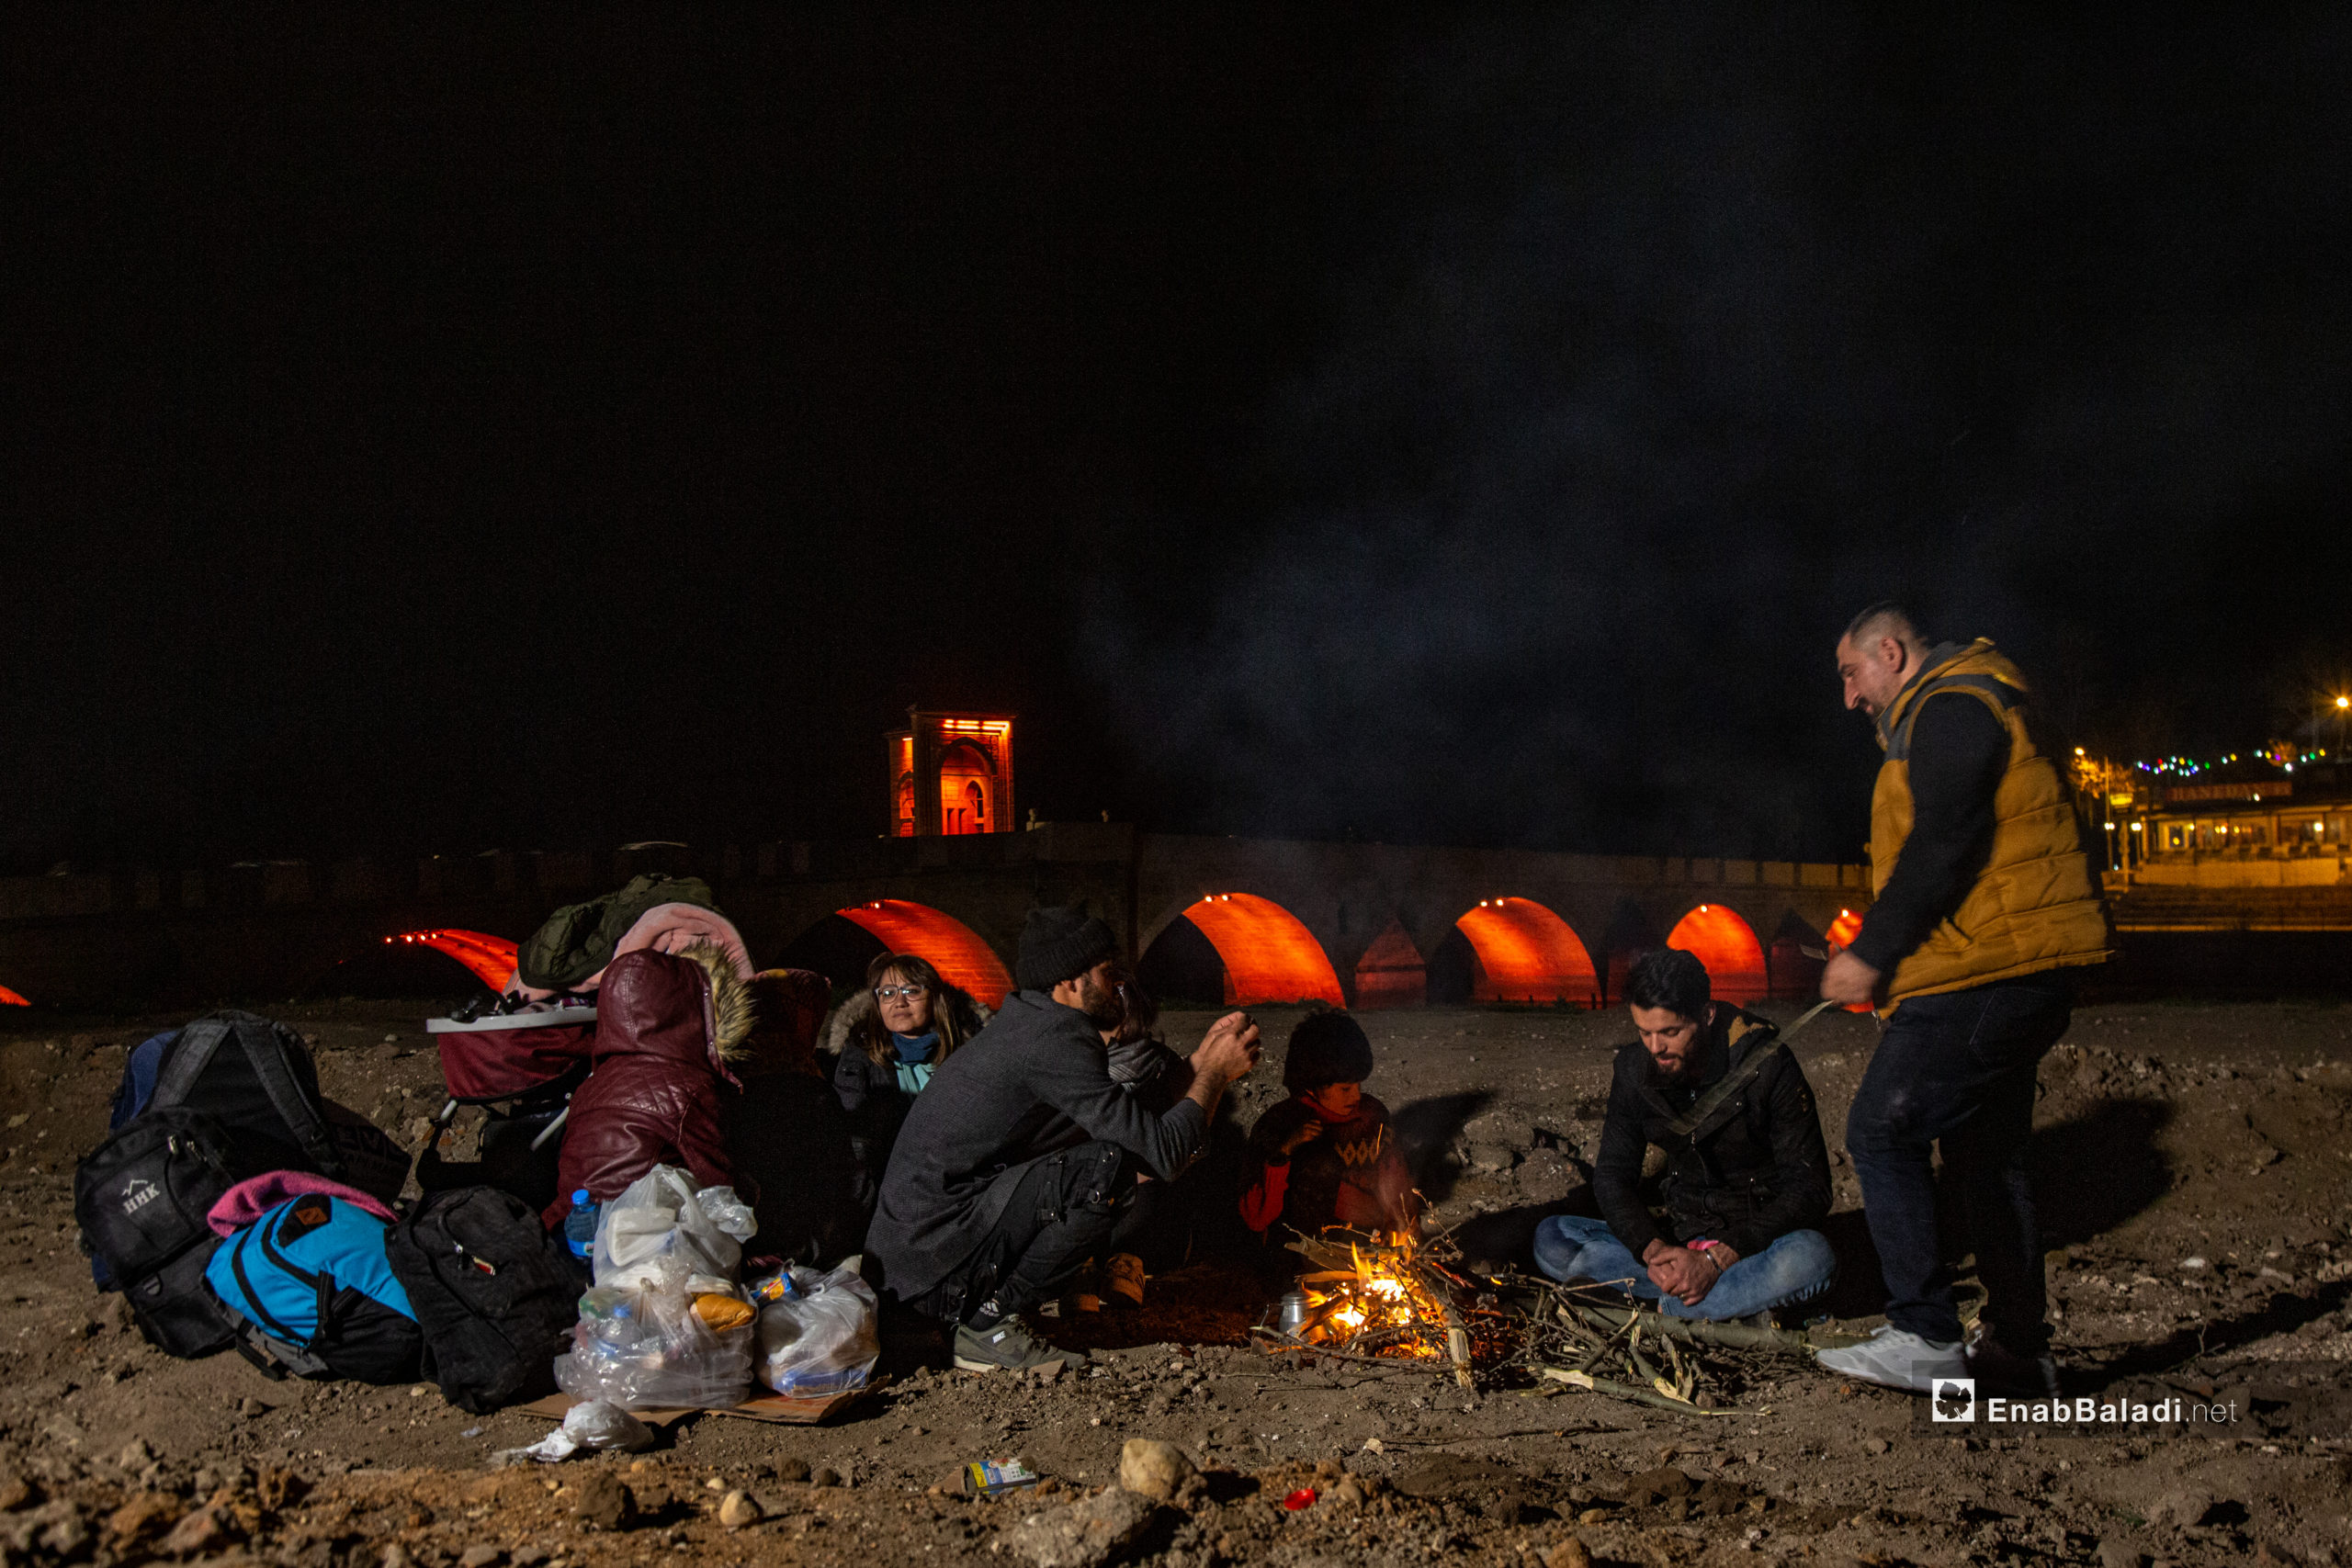 مهاجرون ينتظرون فتح الحدود اليونانية - بازار كوليه في ولاية ادرنة على الحدود التركية اليونانية 4 آذار 2020 (عنب بلدي)